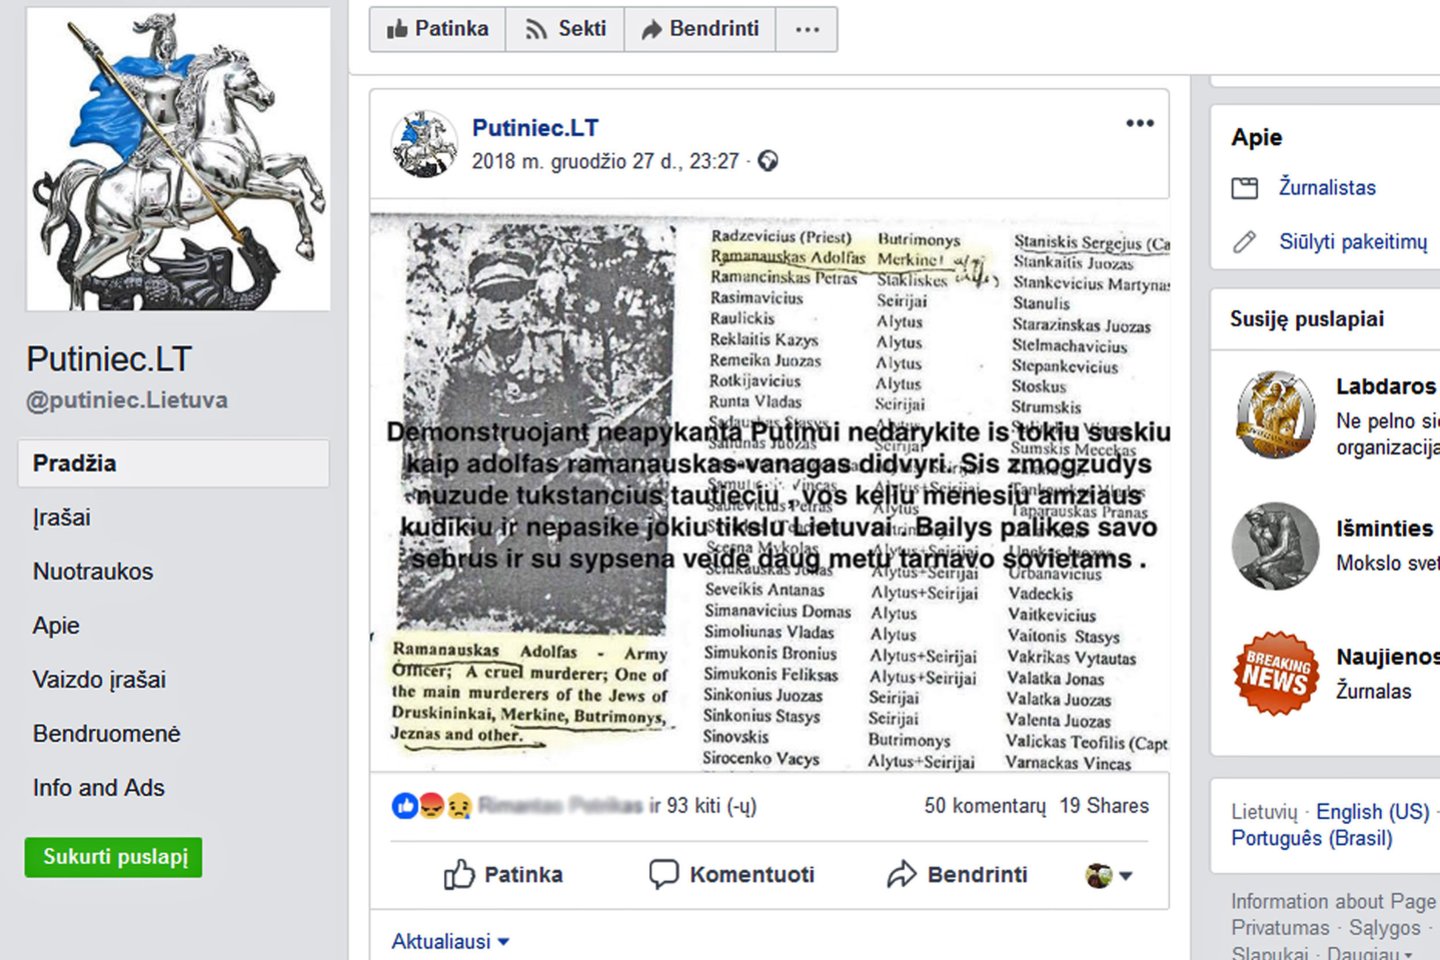 Prorusiški veikėjai socialiniuose tinkluose platina šmeižikišką informaciją apie gyvybę už Lietuvą paaukojusį partizanų vadą A.Ramanauską - Vanagą.